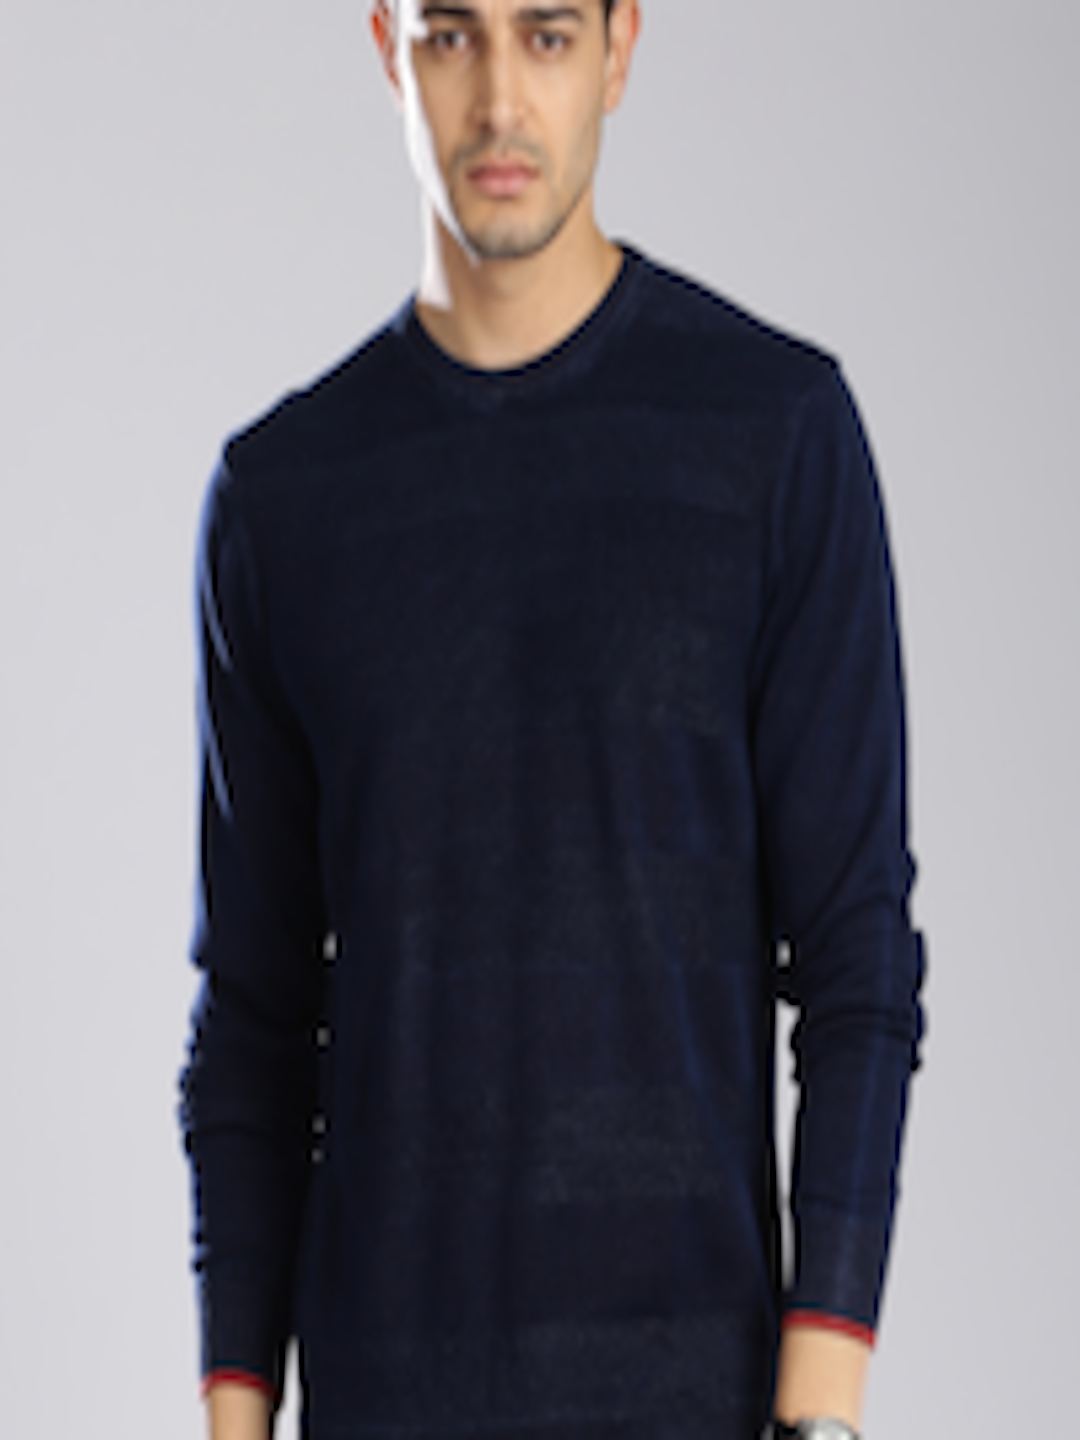 Buy Levis Men Navy Blue Self Design Sweater - Sweaters for Men 1514929 ...